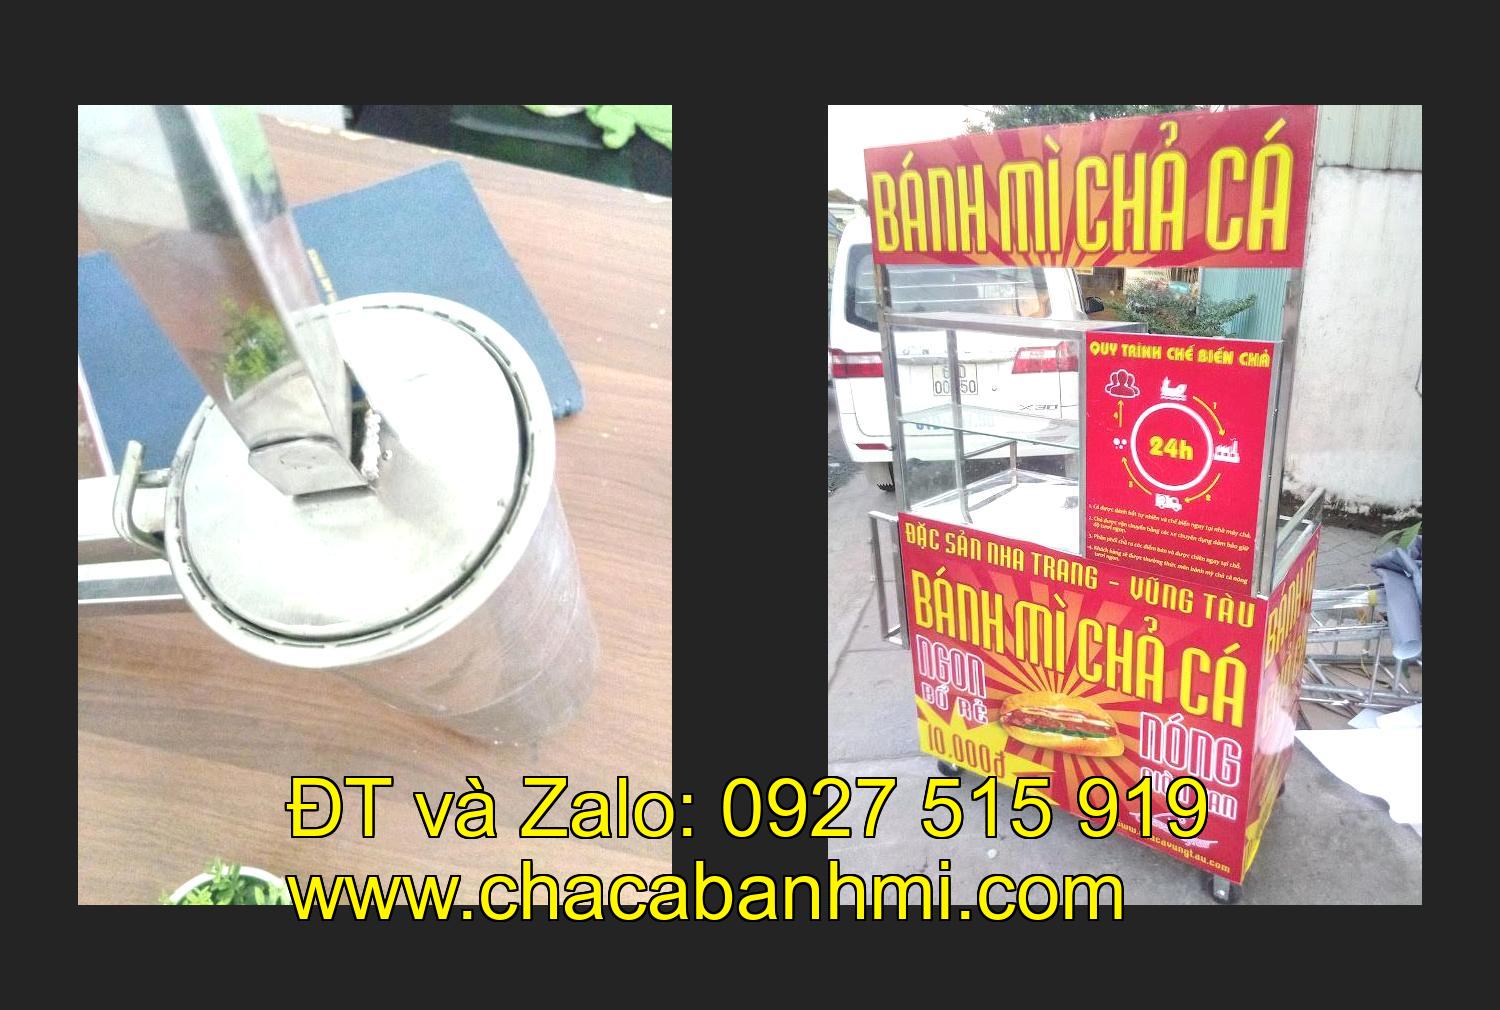 xe bánh mì chả cá inox tại tỉnh Quảng Ninh